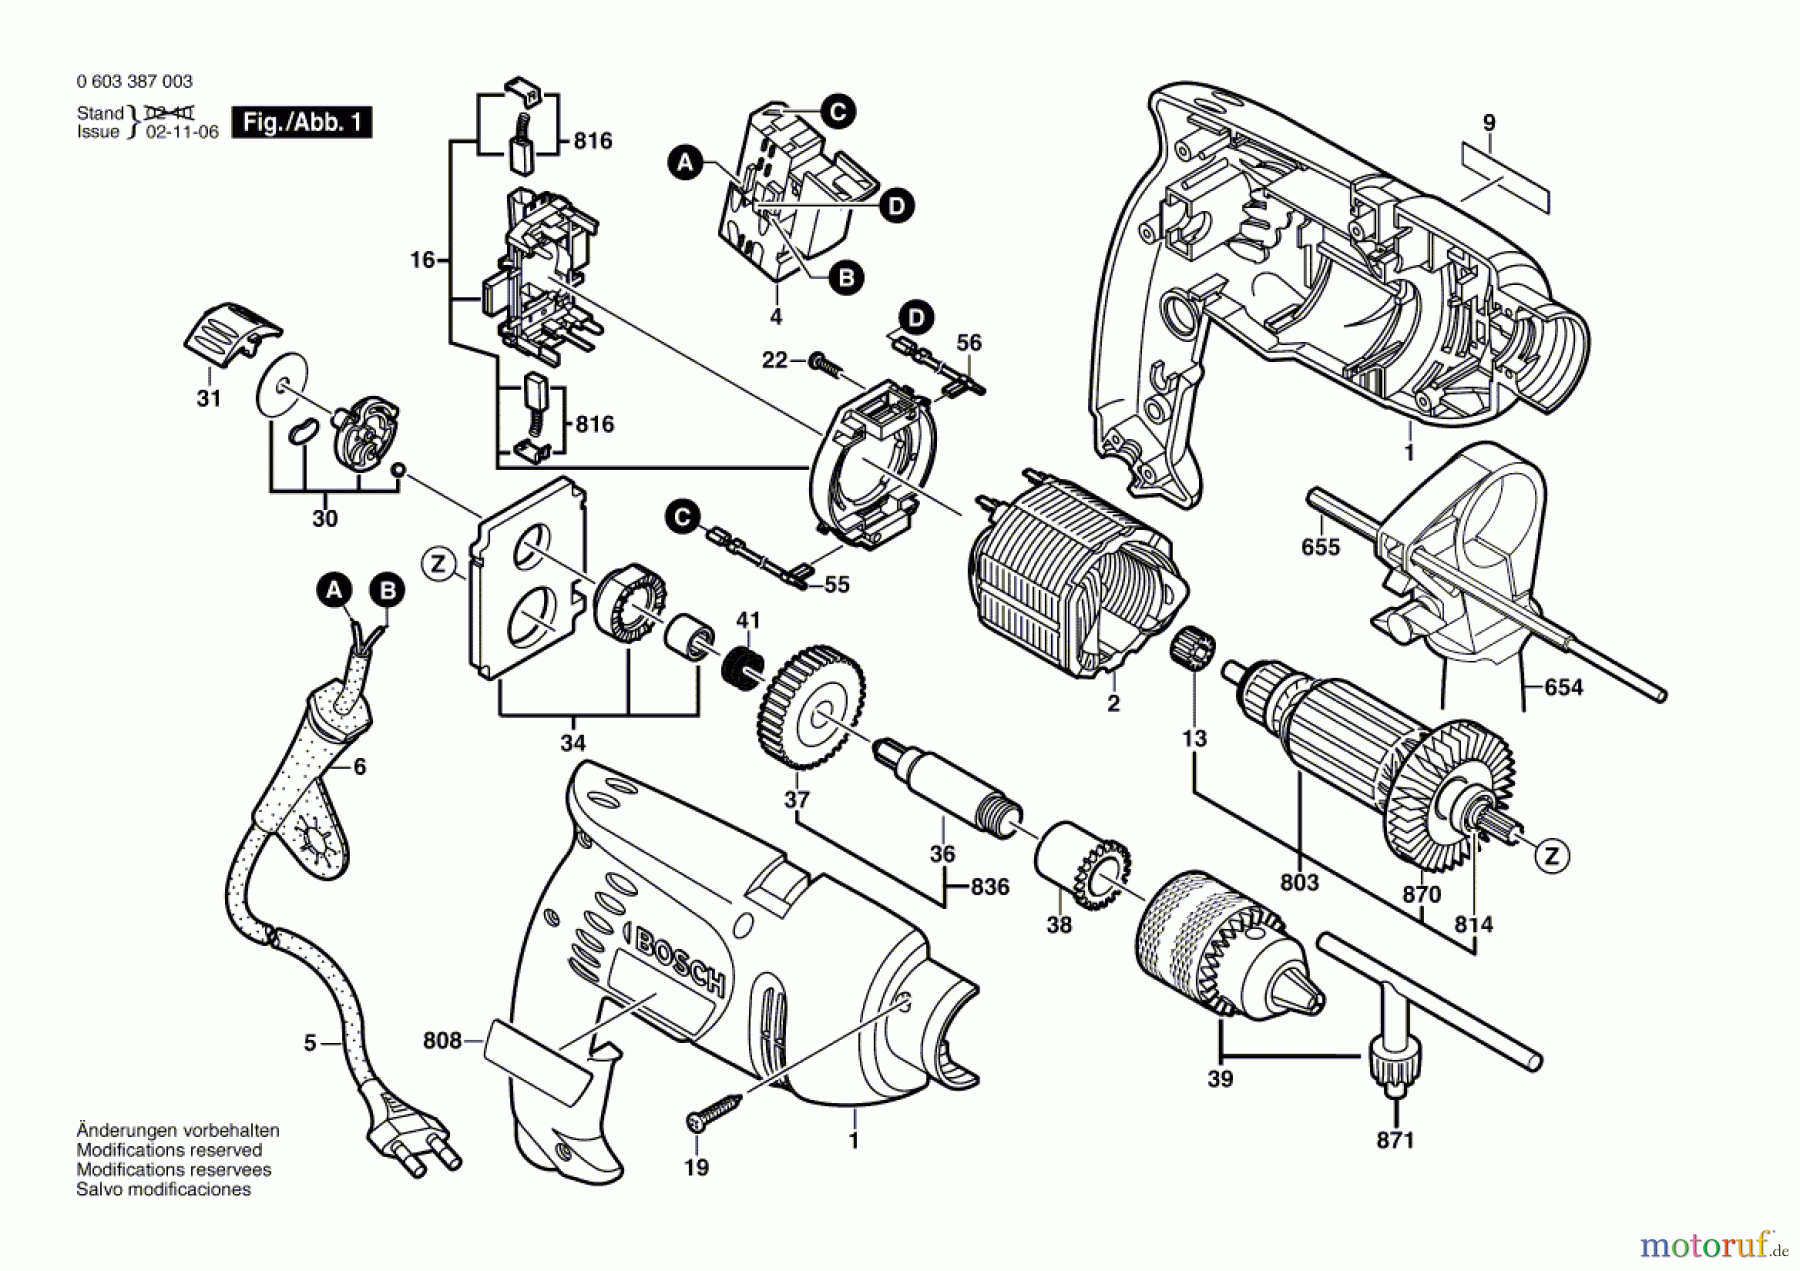  Bosch Werkzeug Schlagbohrmaschine PSB 500-2 Seite 1